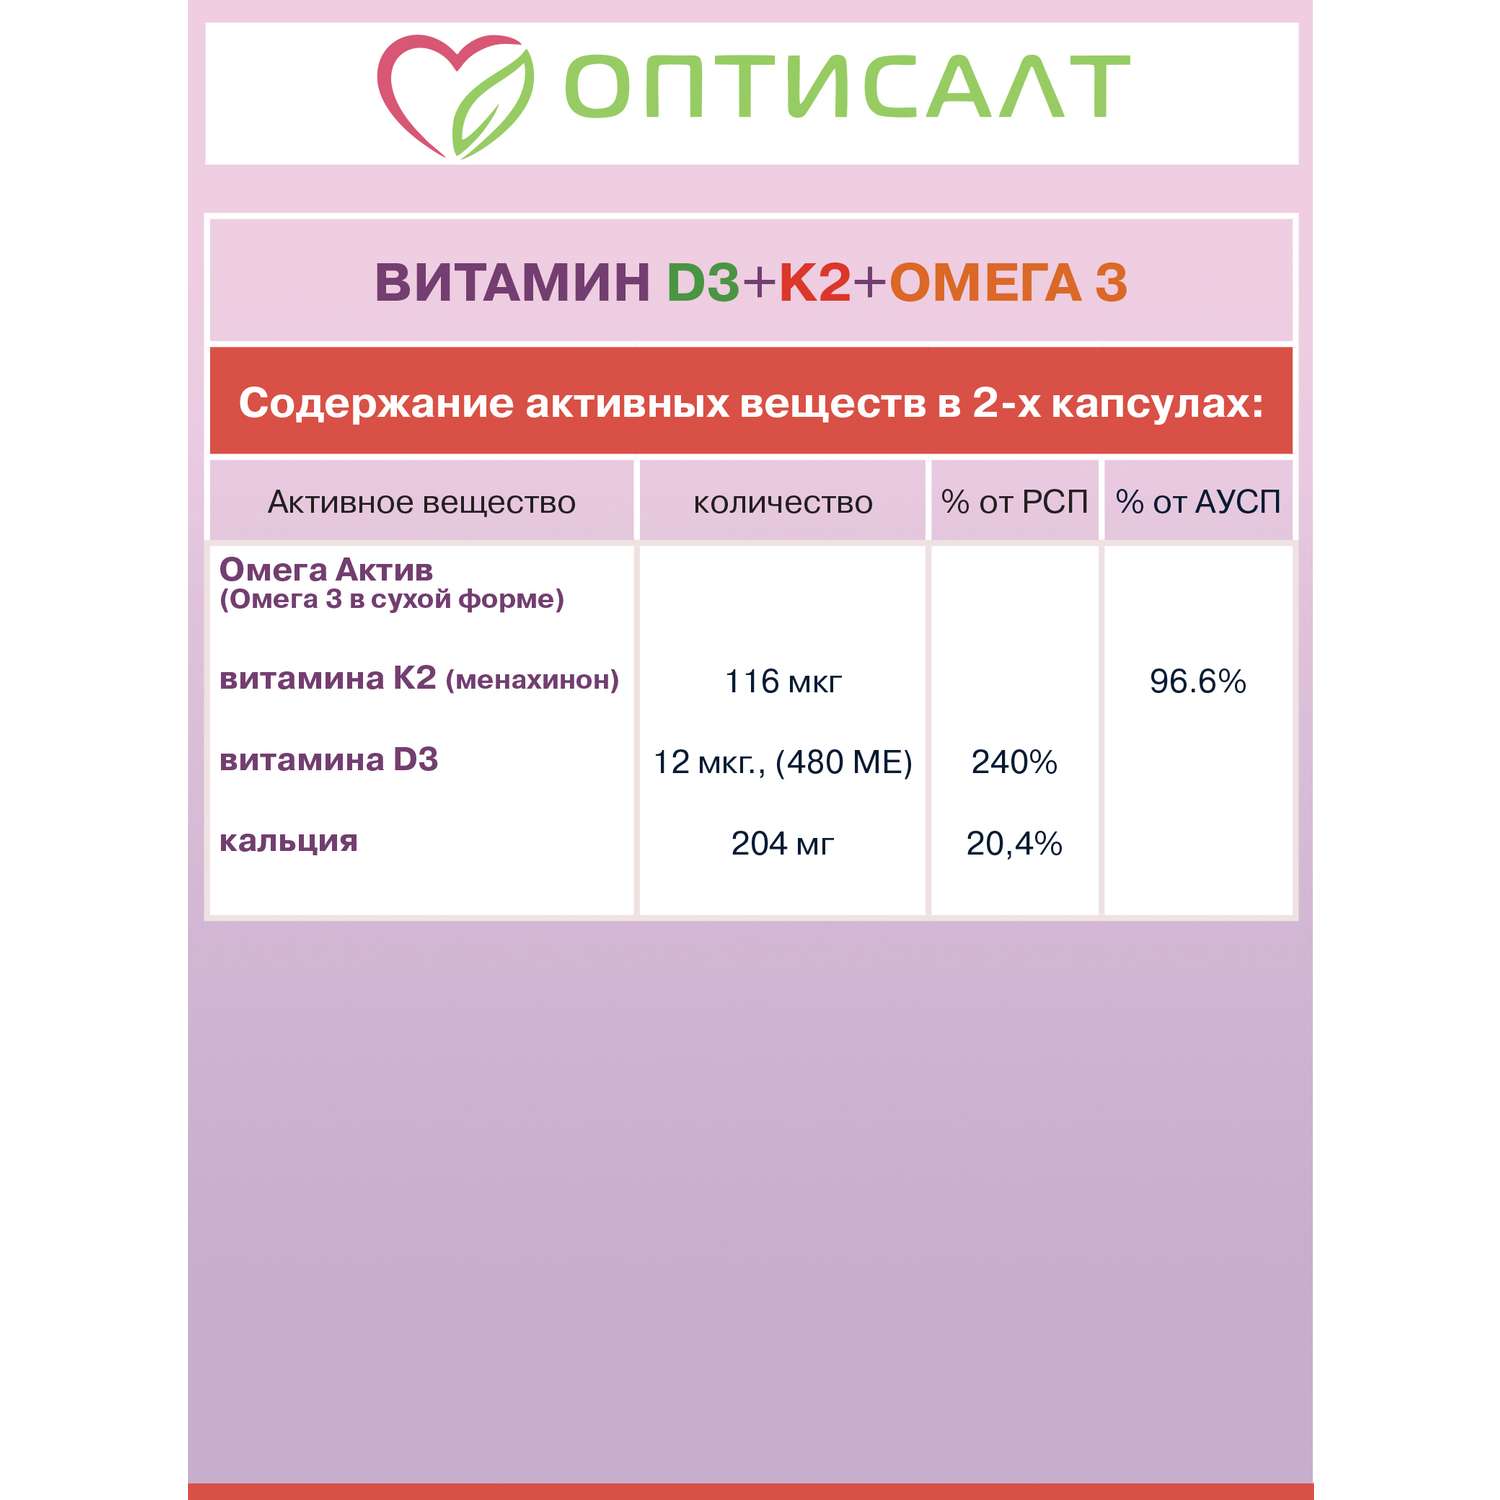 Витамин Д3+К2+Омега3 Оптисалт 60 капсул - фото 11